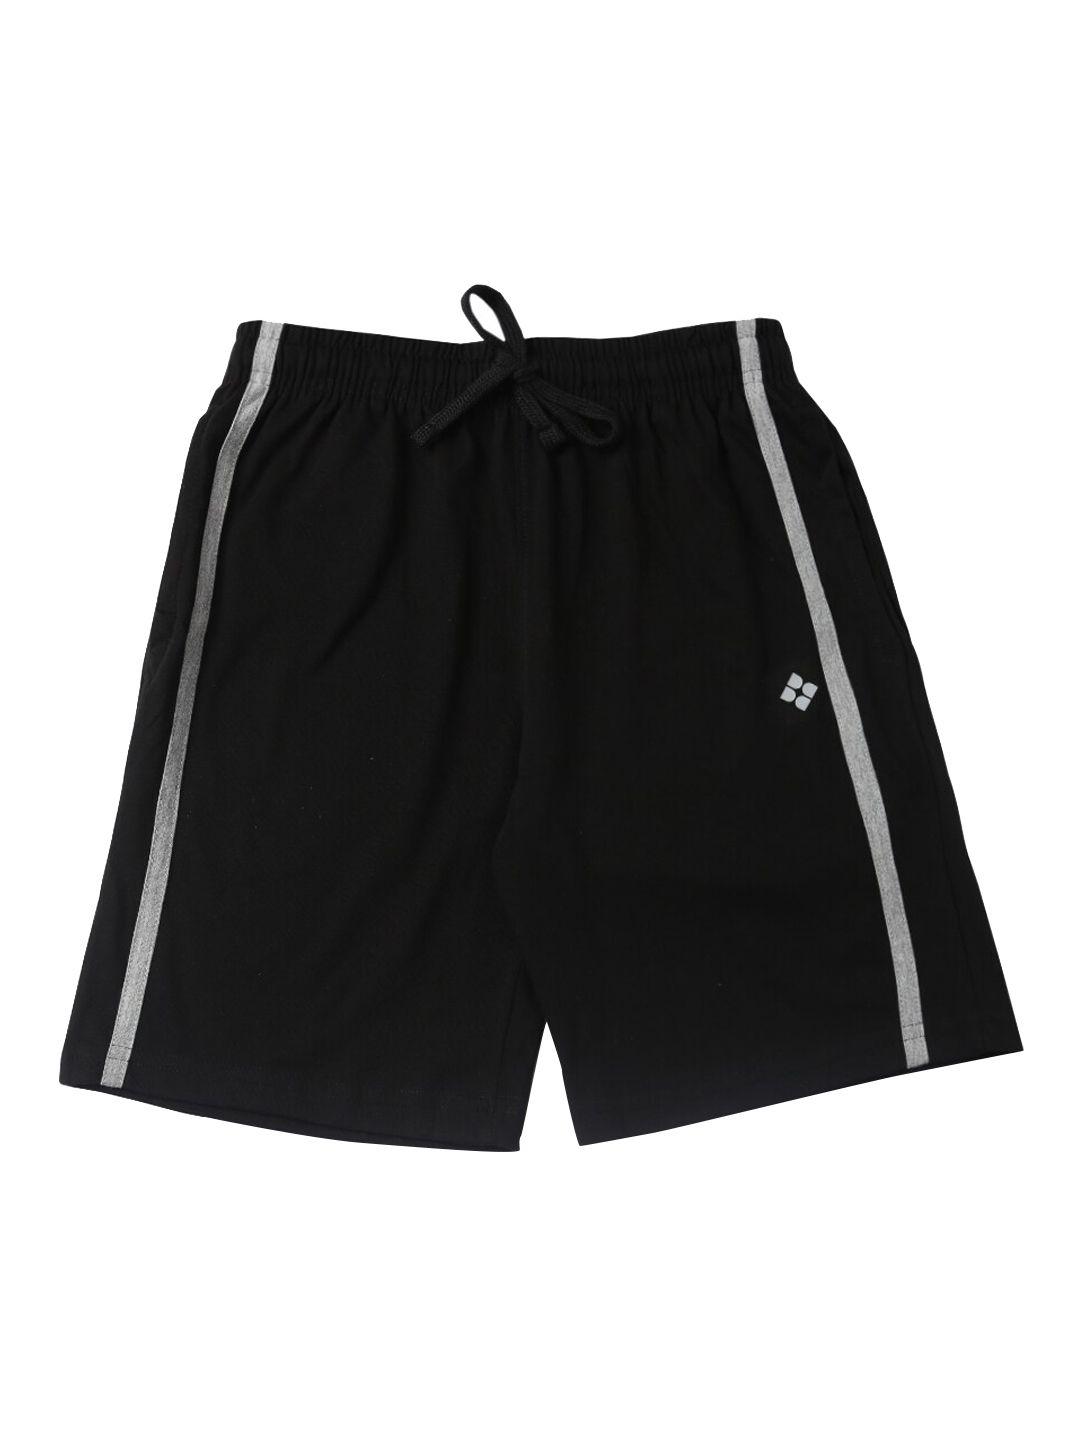 dollar-boys-black-solid-regular-fit-regular-shorts